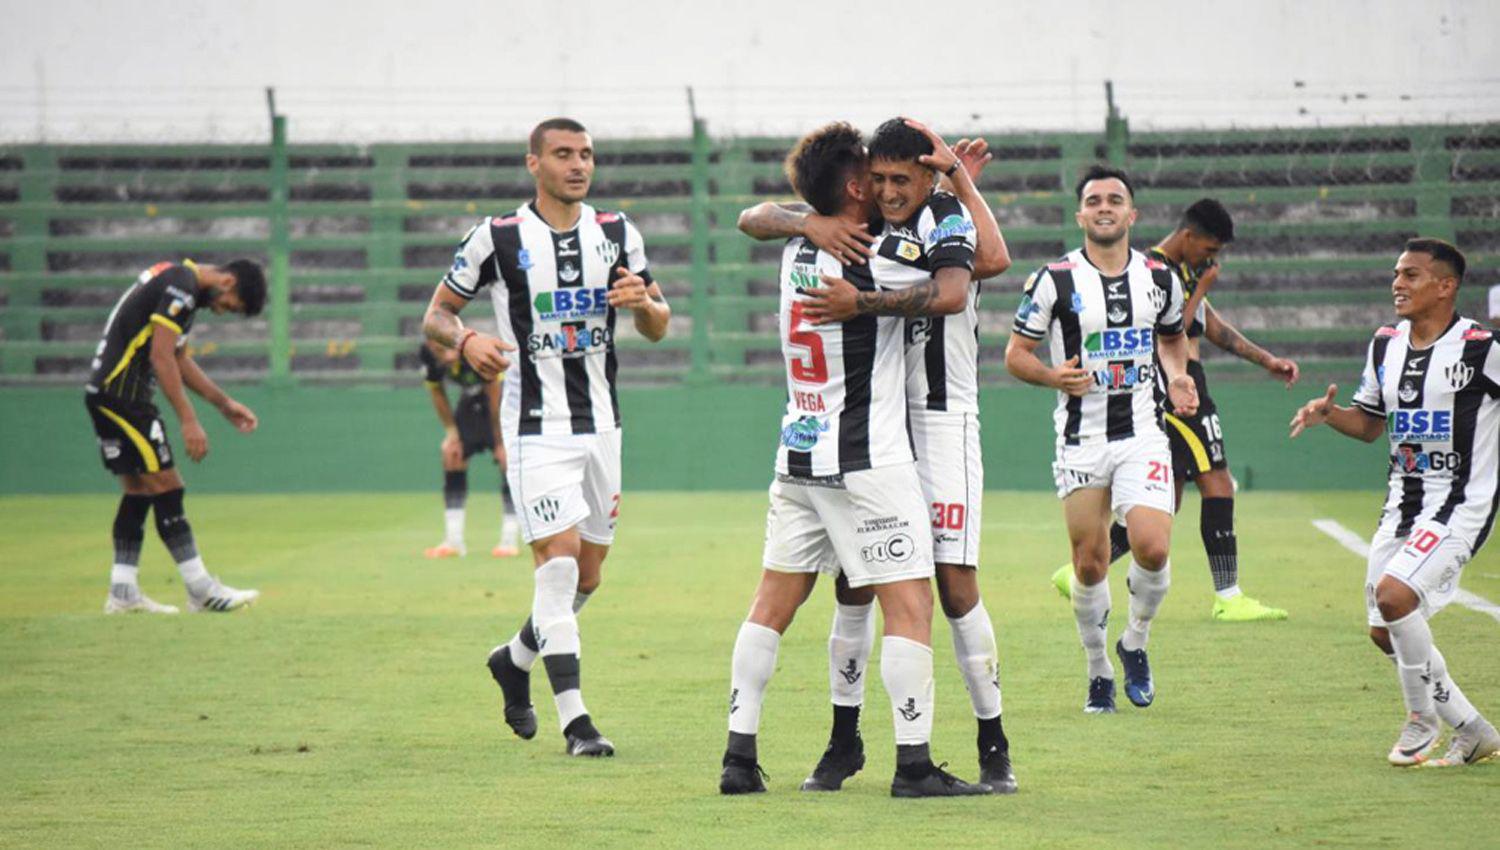 Santiago Rosales decretó el 3-2 en el final y recibe el saludo de sus compañeros Abajo Argañaraz anotaba el primer gol del partido